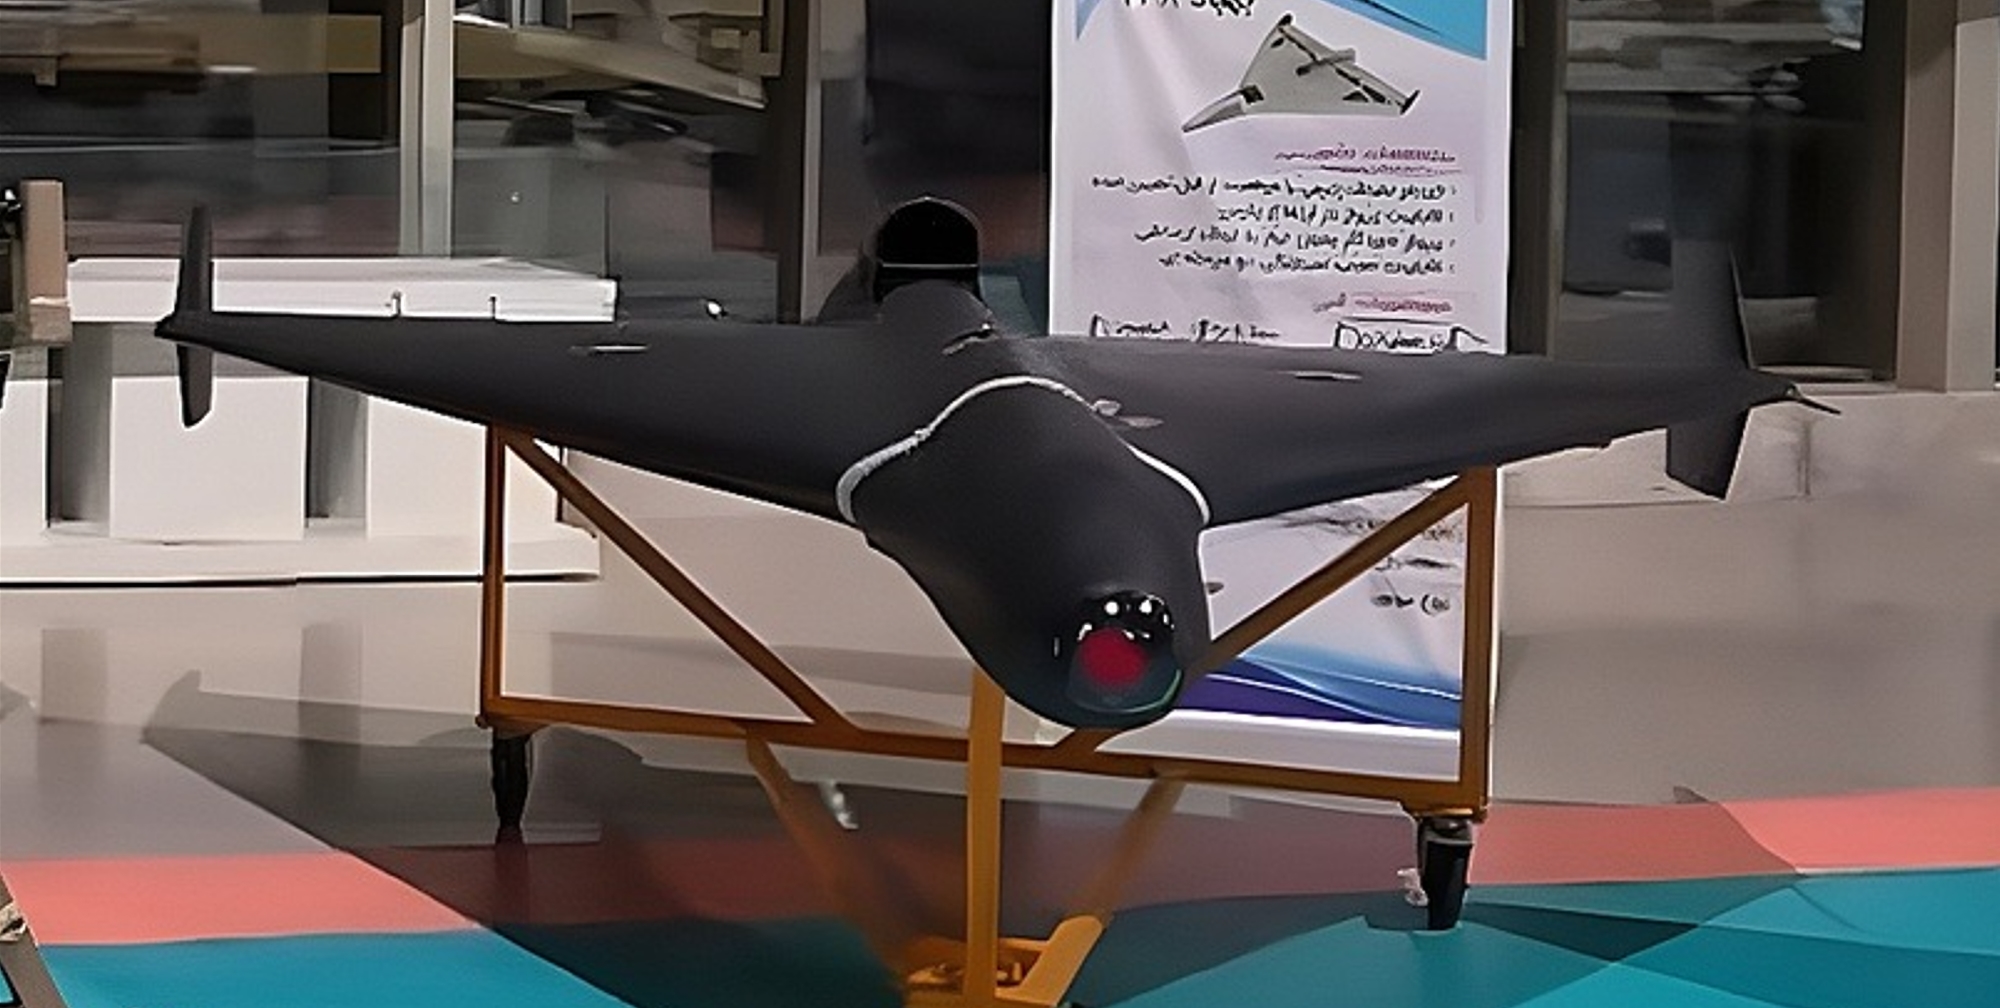 Іран представив БПЛА Shahed-238: реактивна модифікація Shahed-136 з трьома різними системами наведення